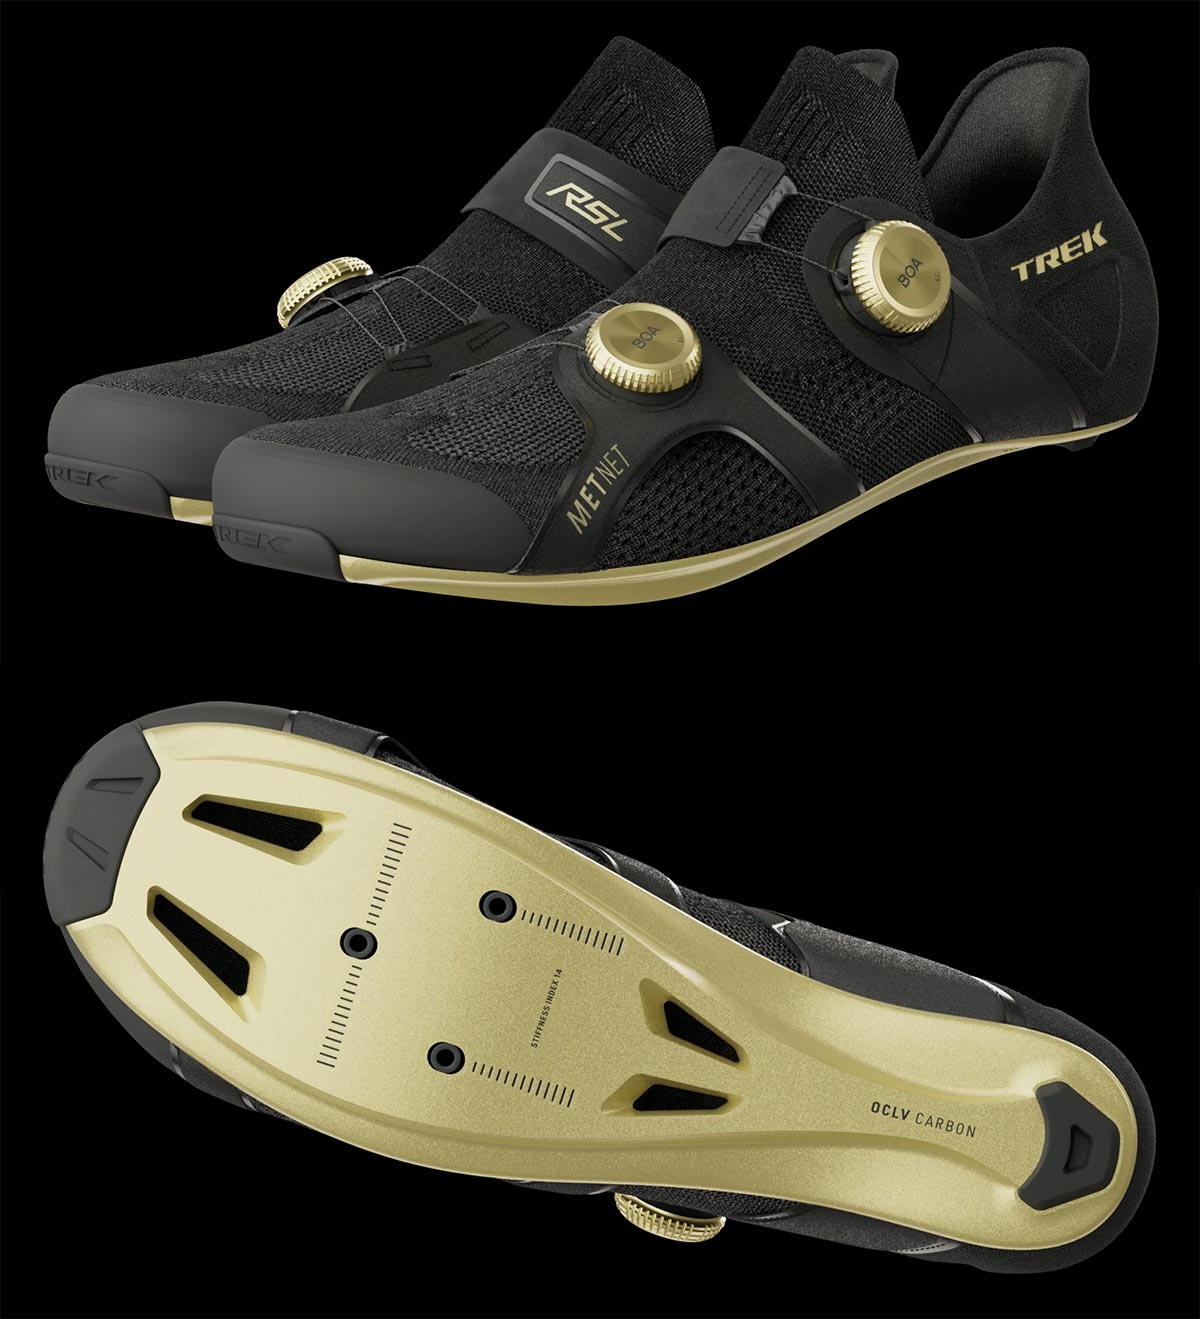 Trek Bikes introduce la tecnología METNET en sus mejores zapatillas de carretera para acabar con el entumecimiento de los pies